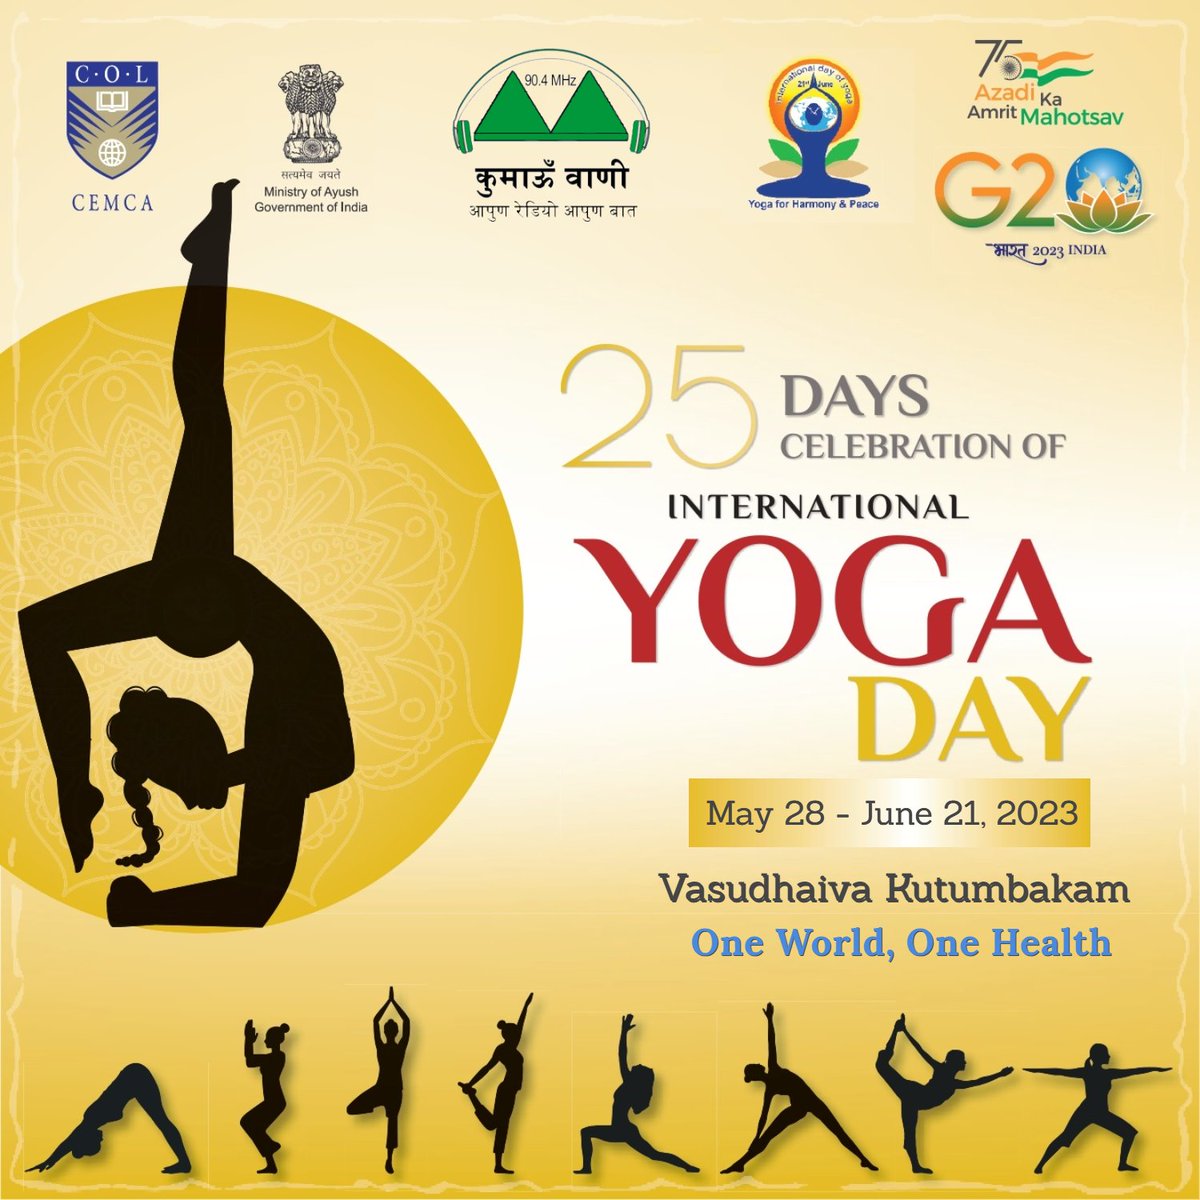 प्रतिवर्ष 21 जून को विश्व योग दिवस मनाया जाता है। इस वर्ष हम इसे एक उत्सव के रूप में 25 दिनों तक मना रहे हैं। इस दौरान कुमाऊँवाणी द्वारा योग के प्रति आमजन को जागरूक करते हुए विस्तार से जानकारी प्रदान की जा रही है।
#Yoga #IYD #IYD2023 #Fitness #Health #OneWorldOneHealth #Wellness